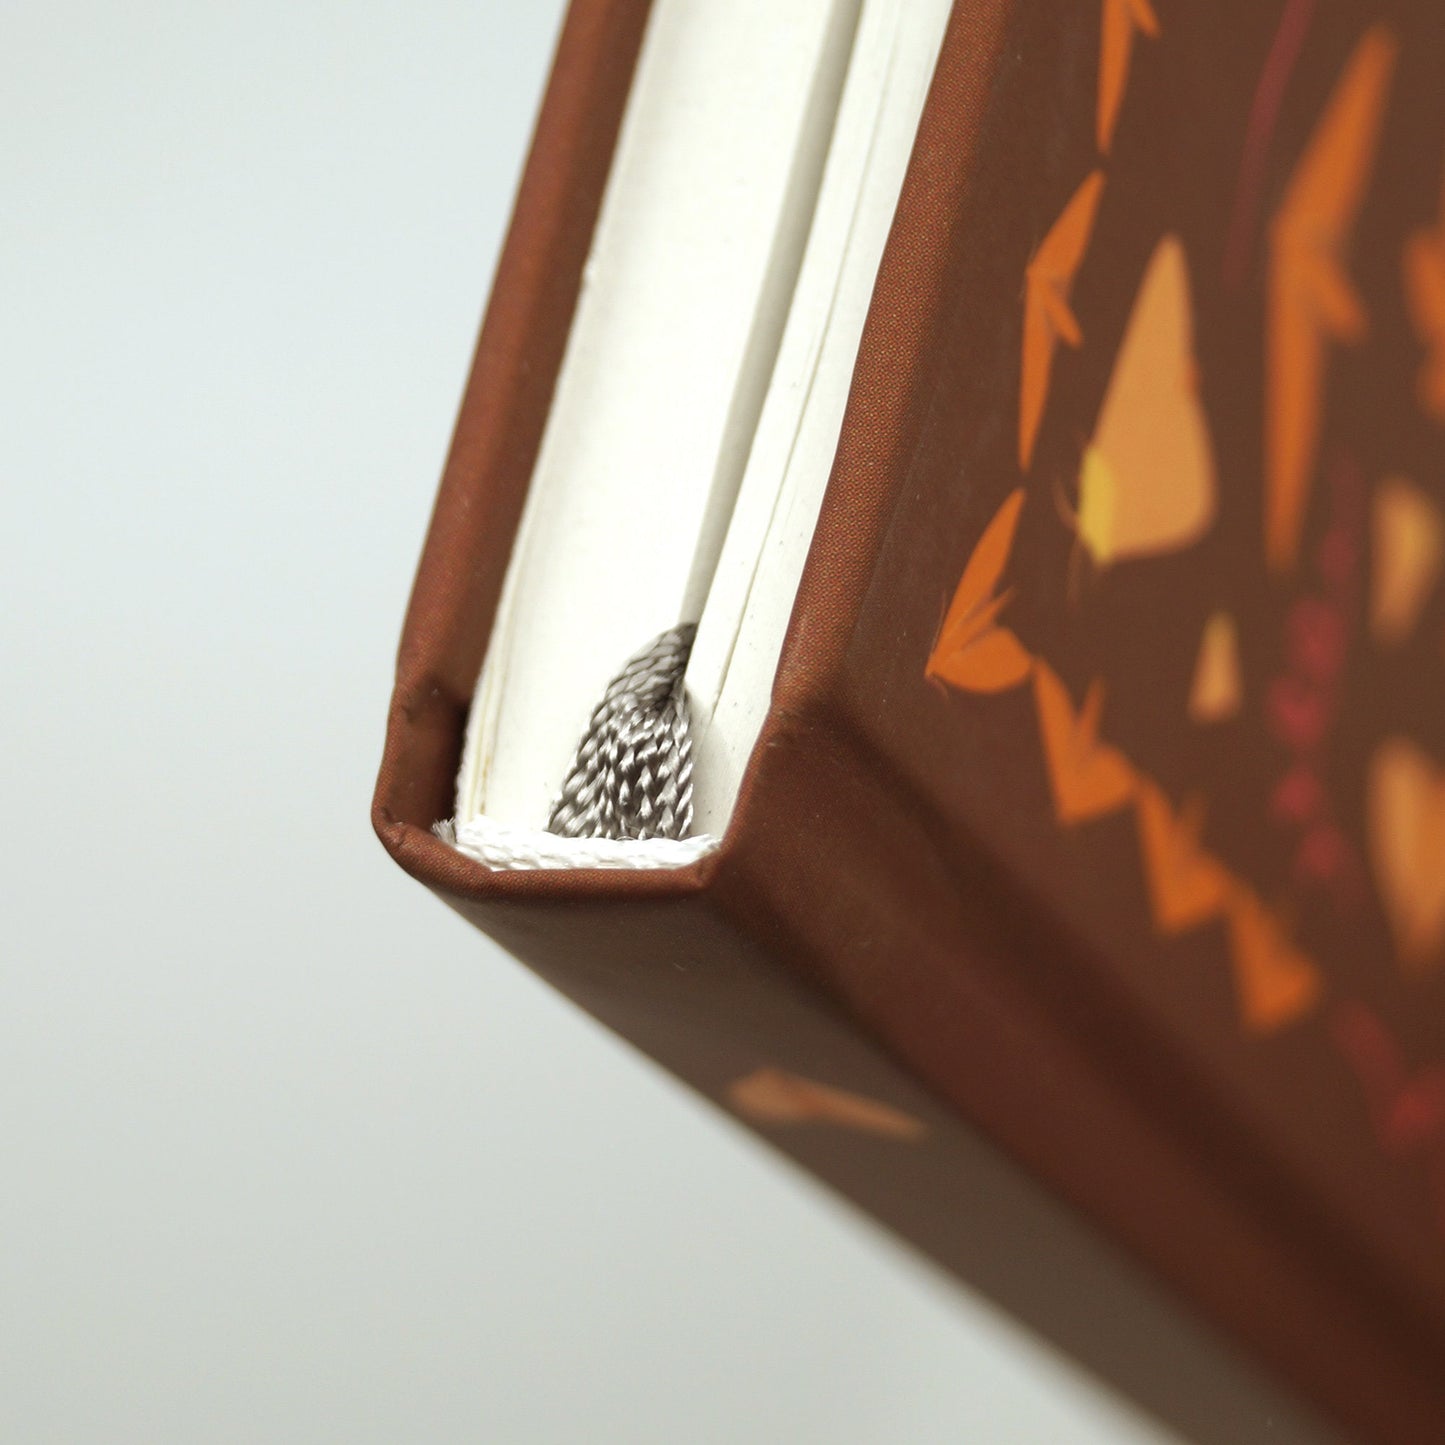 Herbstliches Notizbuch 'Nachtfalter' mit Punktraster und Lesebändchen - umweltfreundlich